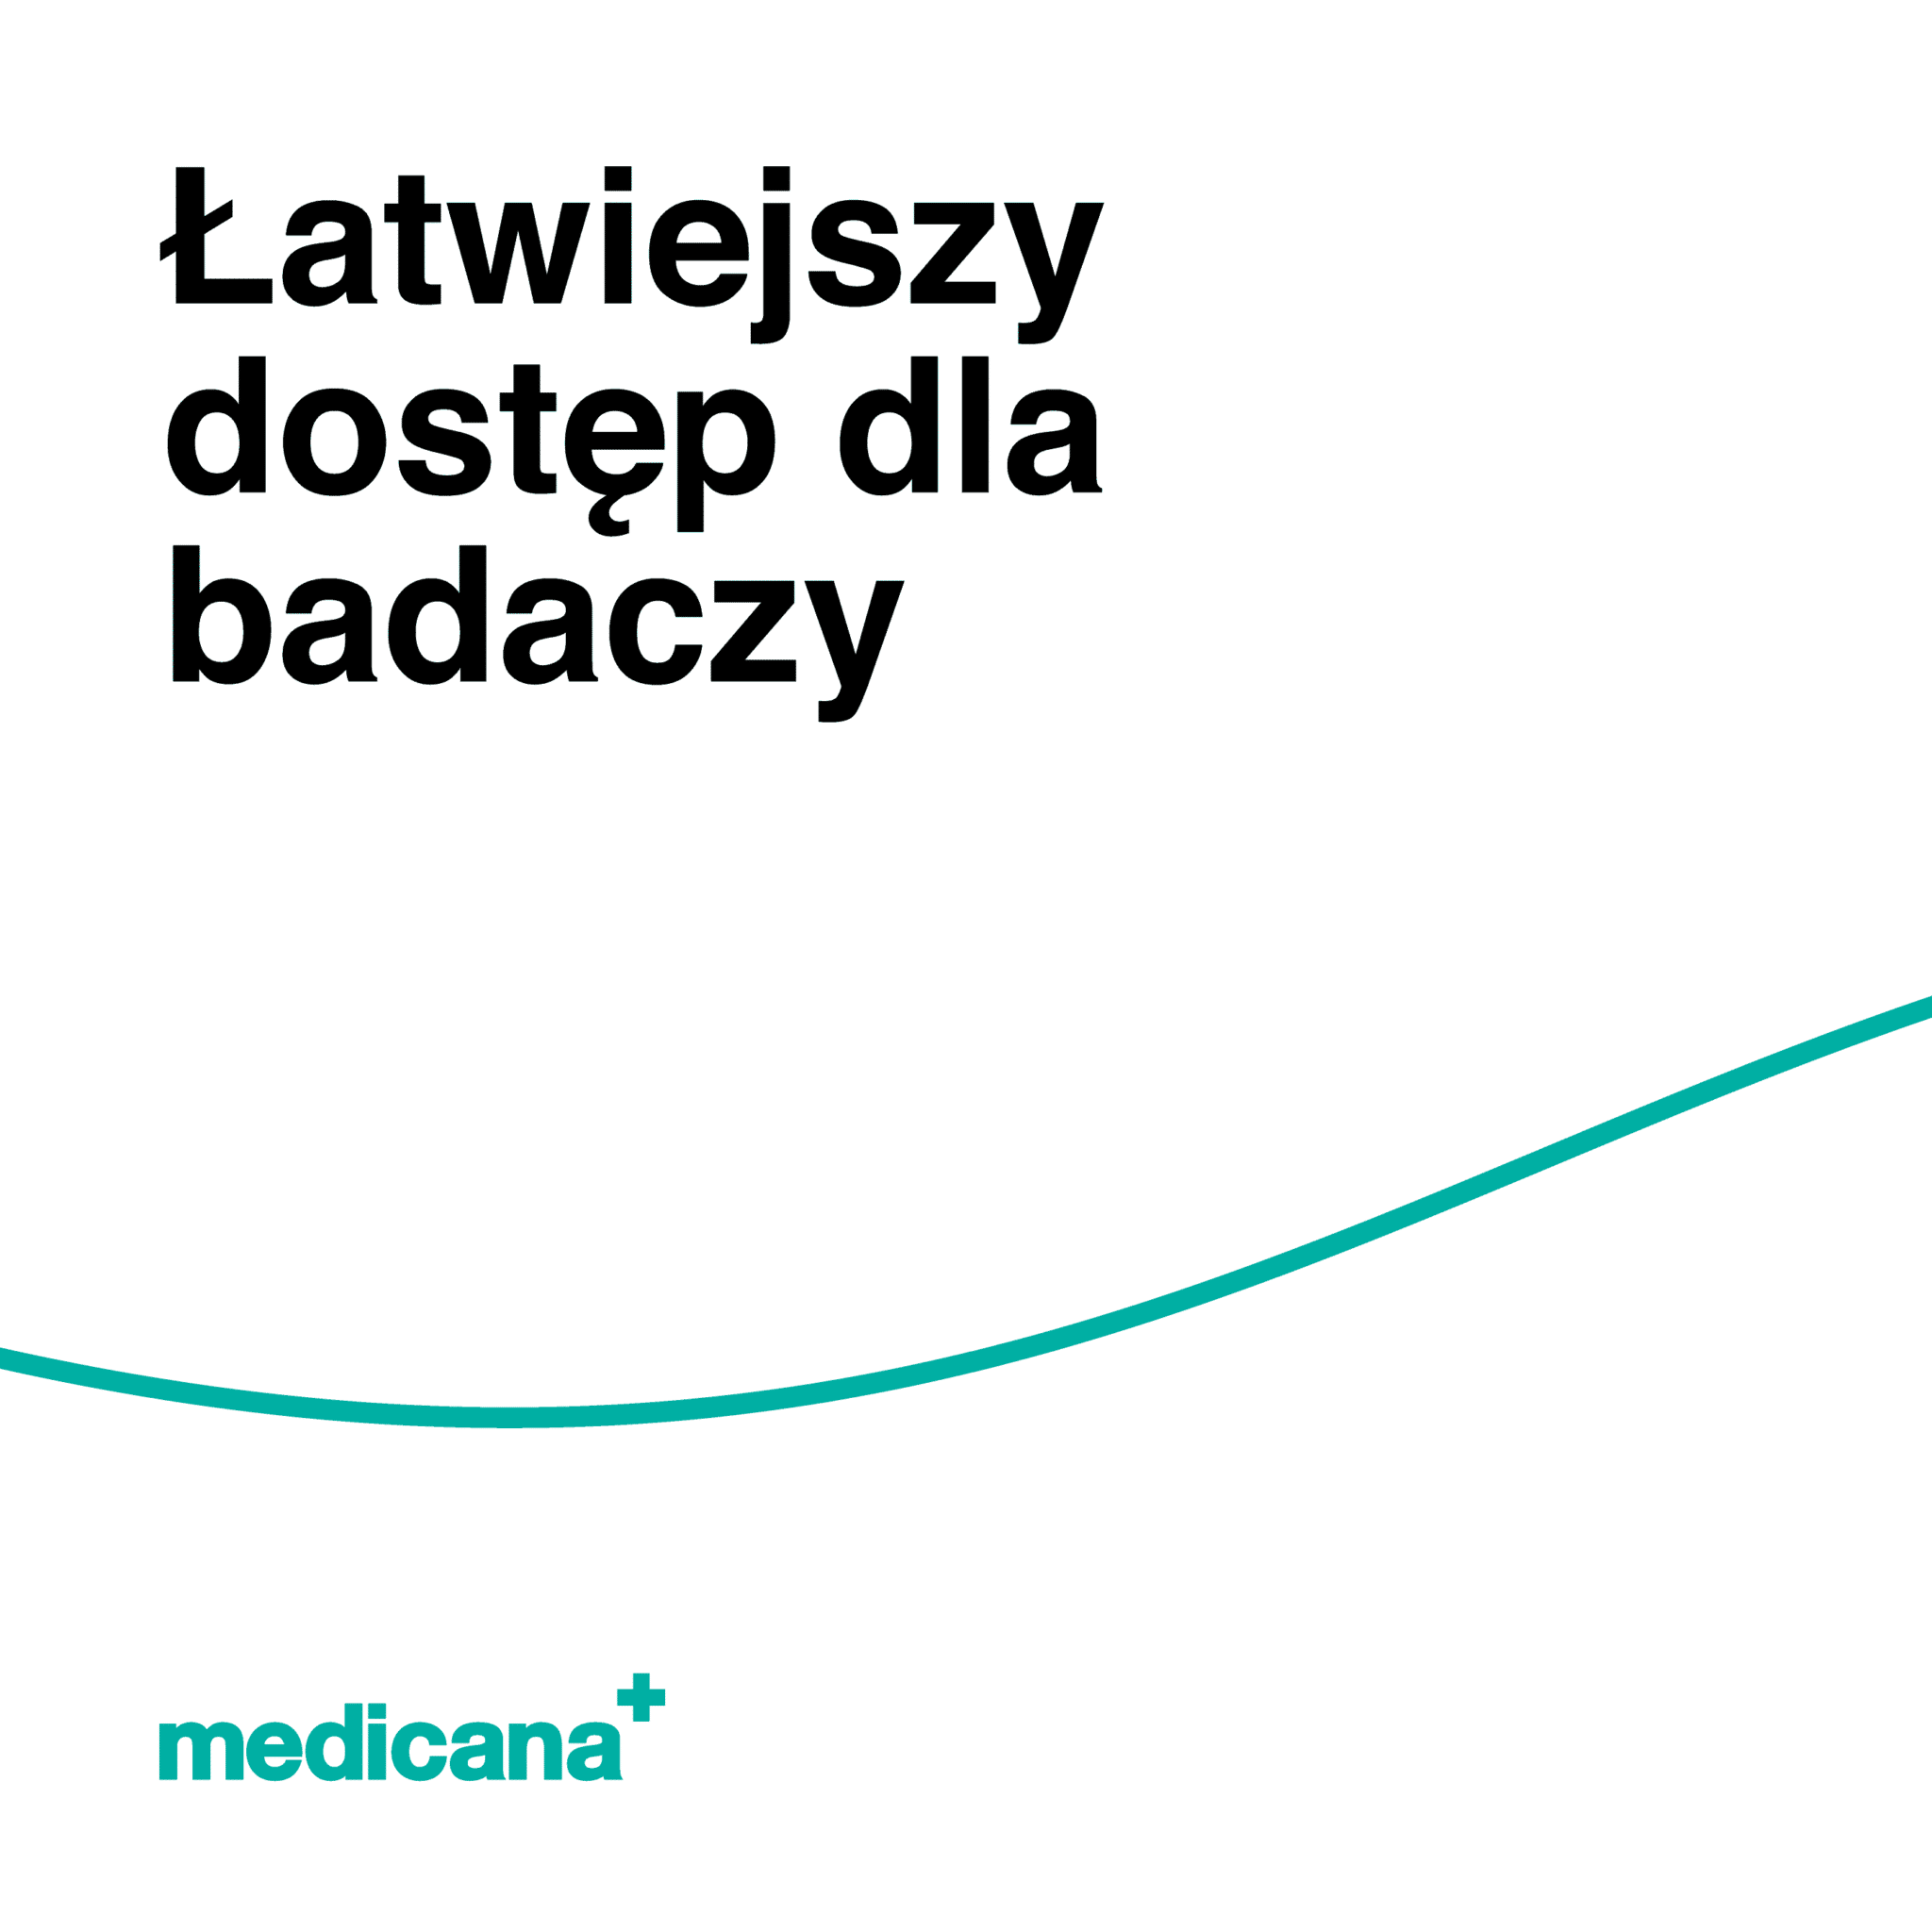 Grafika, białe tło z zieloną linią, czarnym napisem Łatwiejszy dostęp dla badaczy i logo Medicana Centrum Terapii Medyczna Marihuana w lewym dolnym rogu.